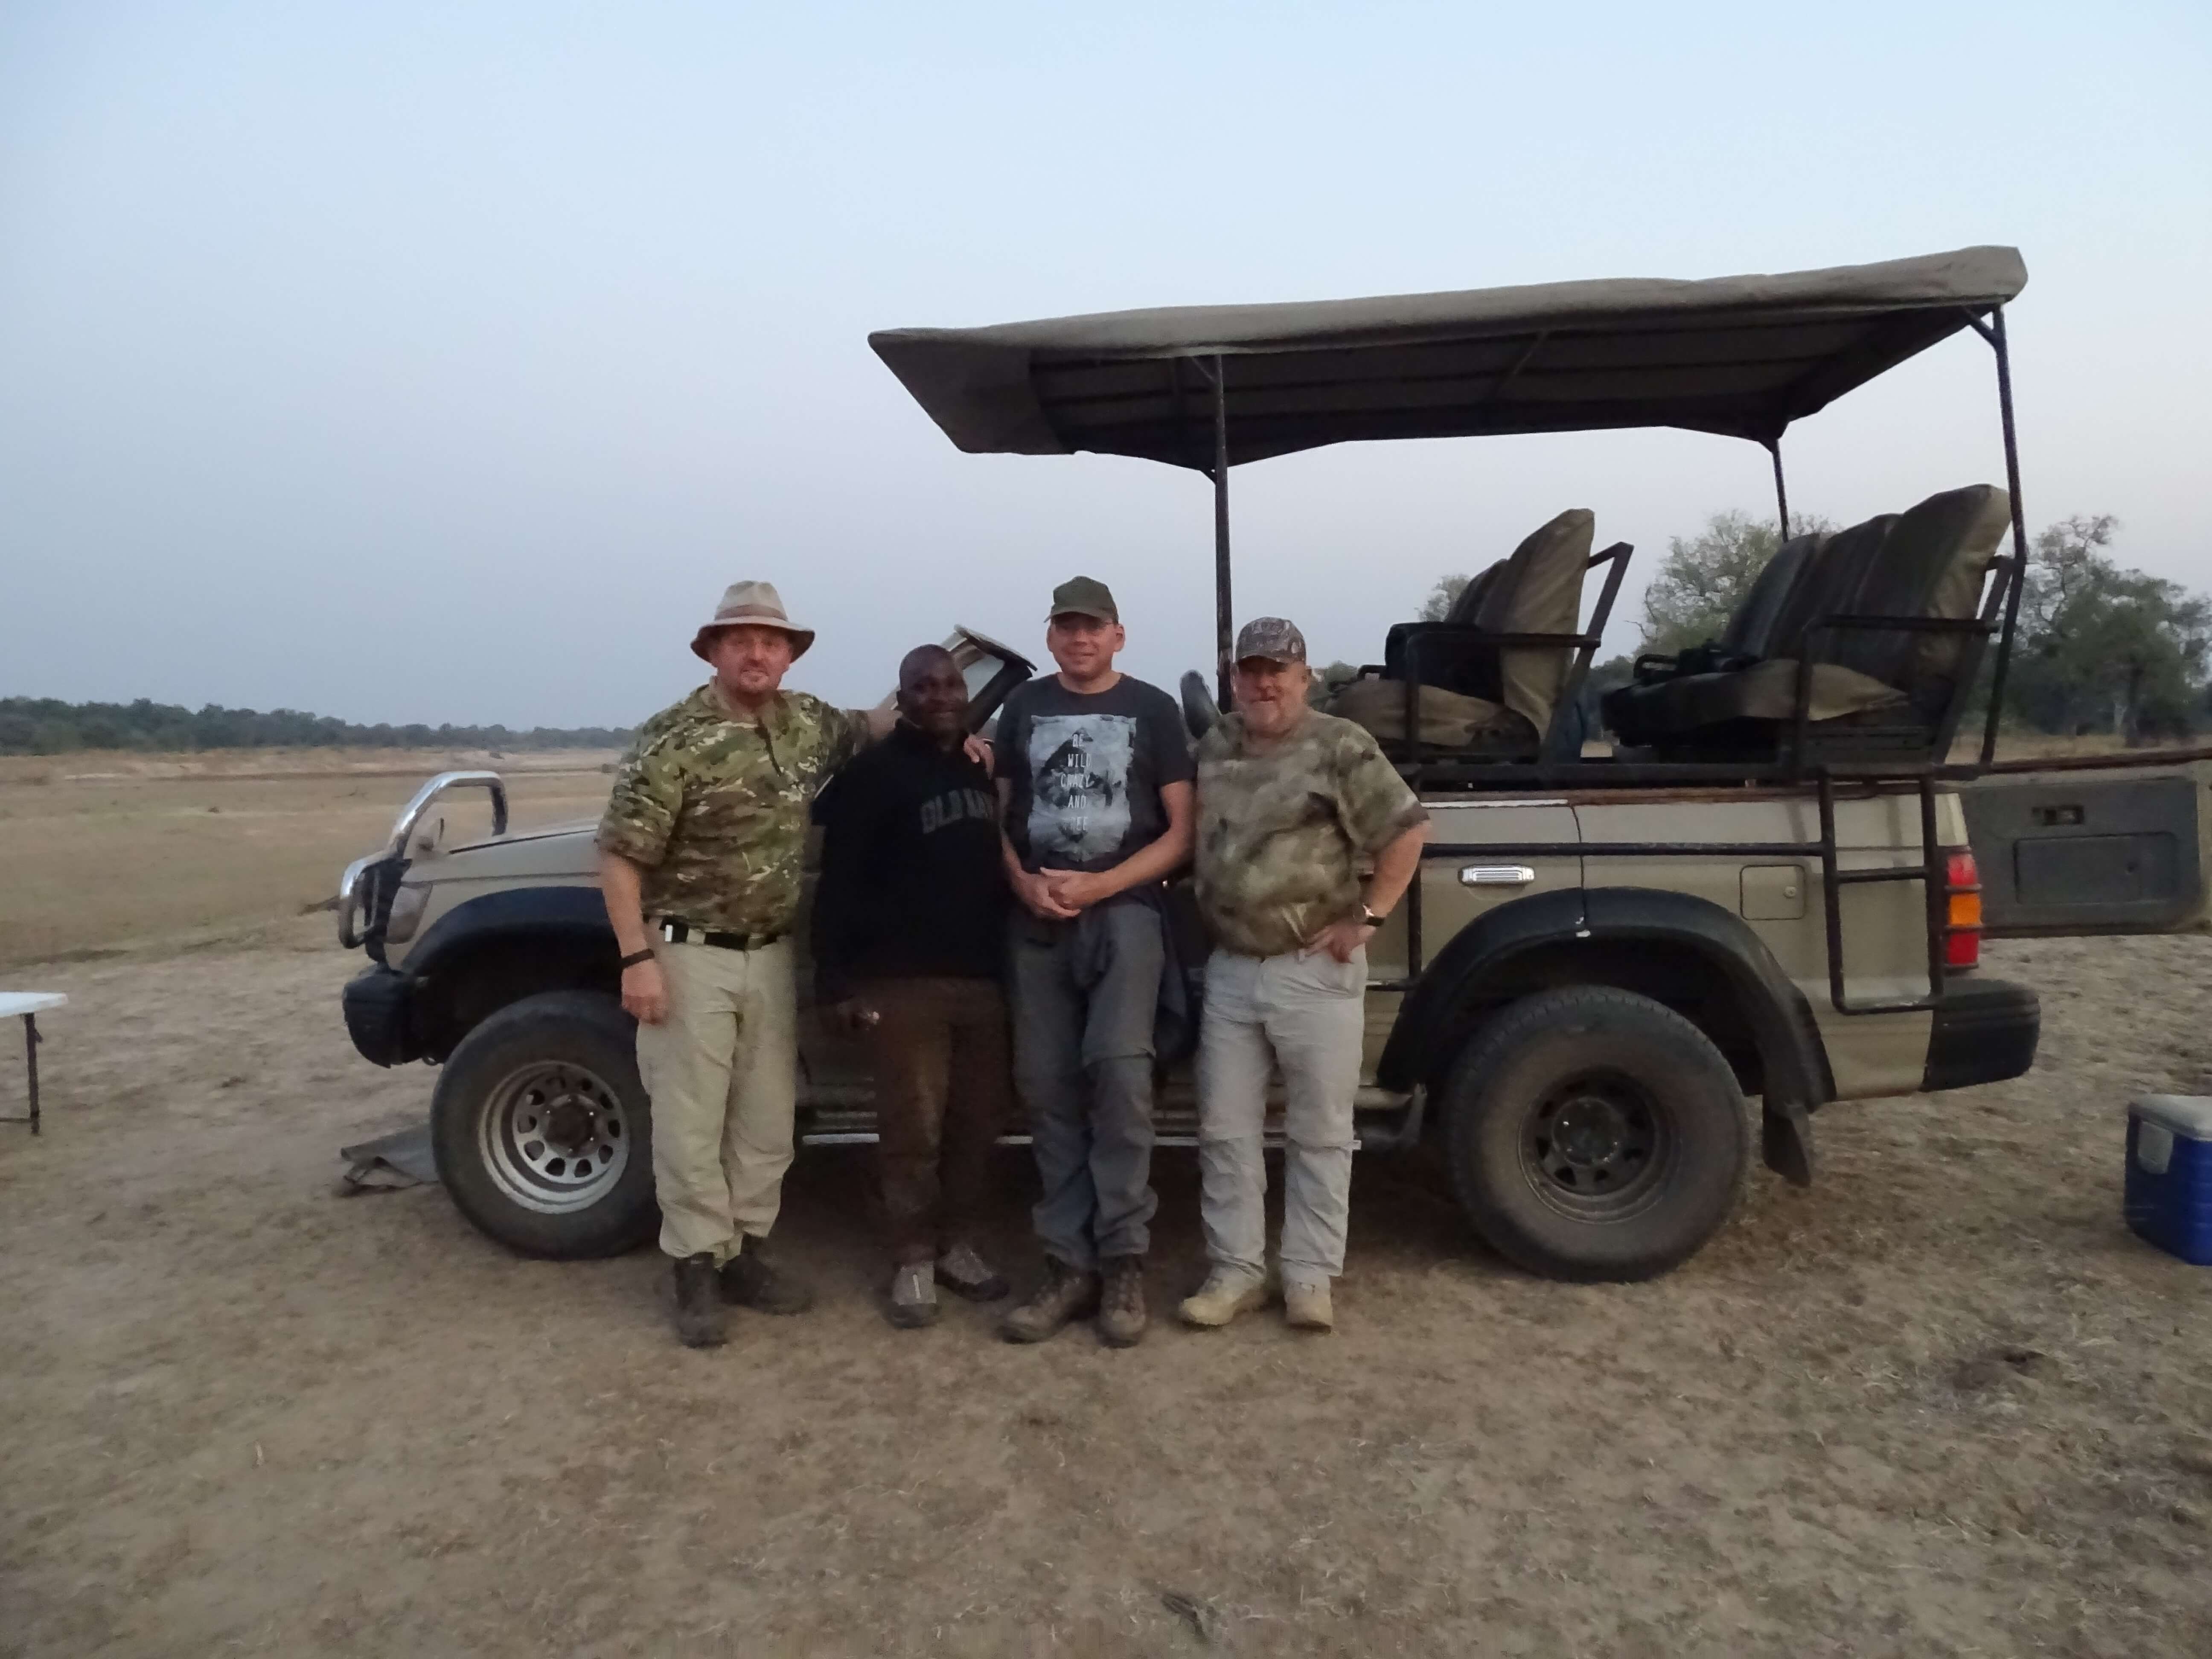 Chris, Paul en Wilco op safari in Zambia en Malawi